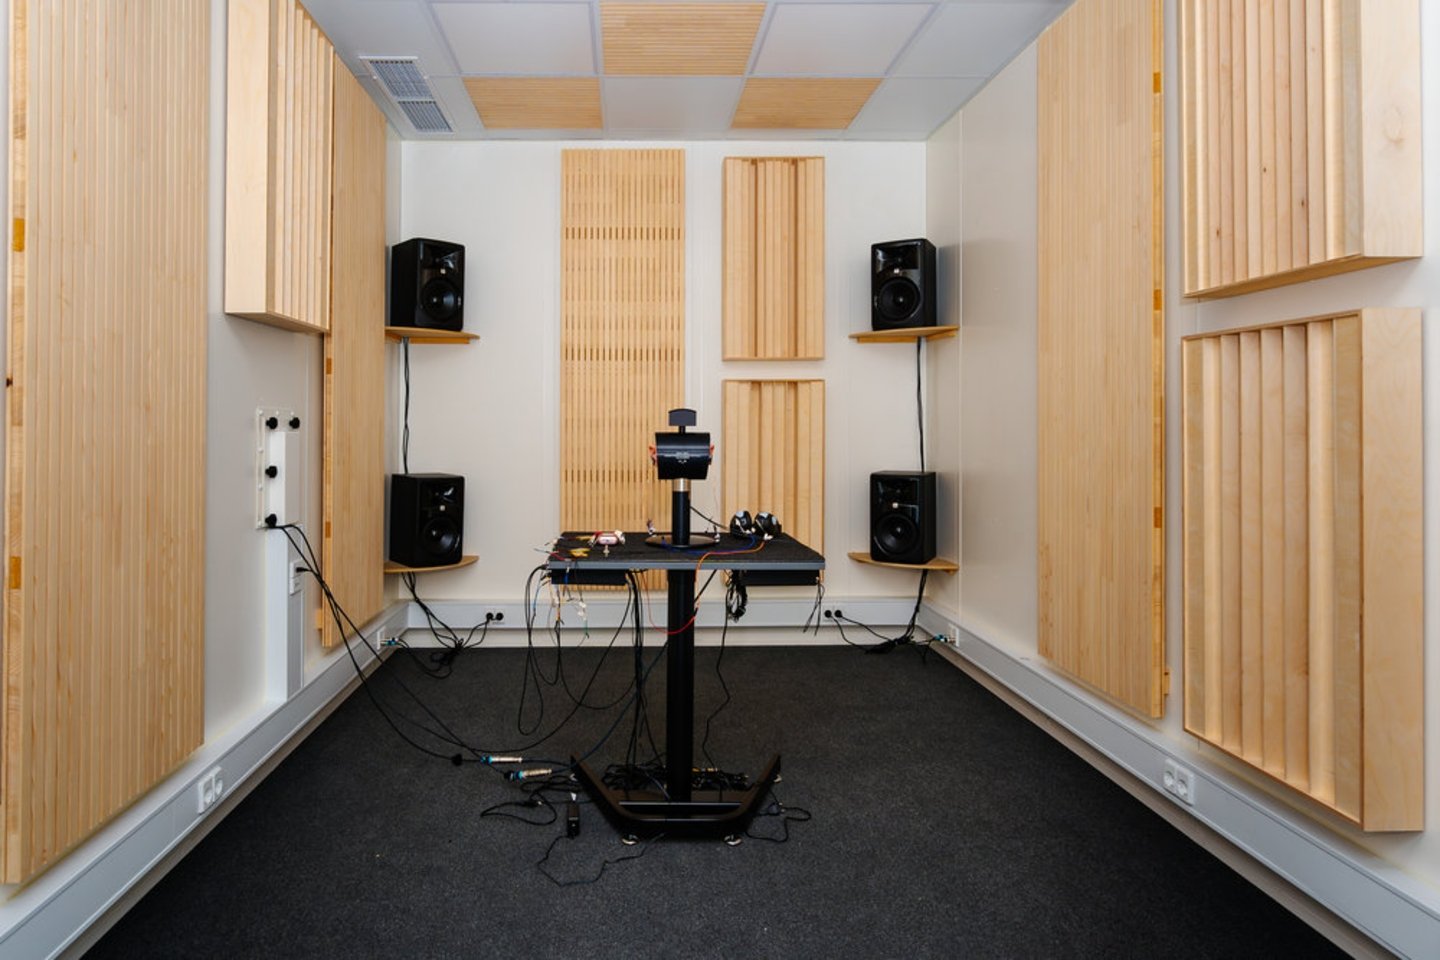 Viajamos invitados por JBL al Harman Audiolab Denmark para su presentación: así se vivió desde dentro